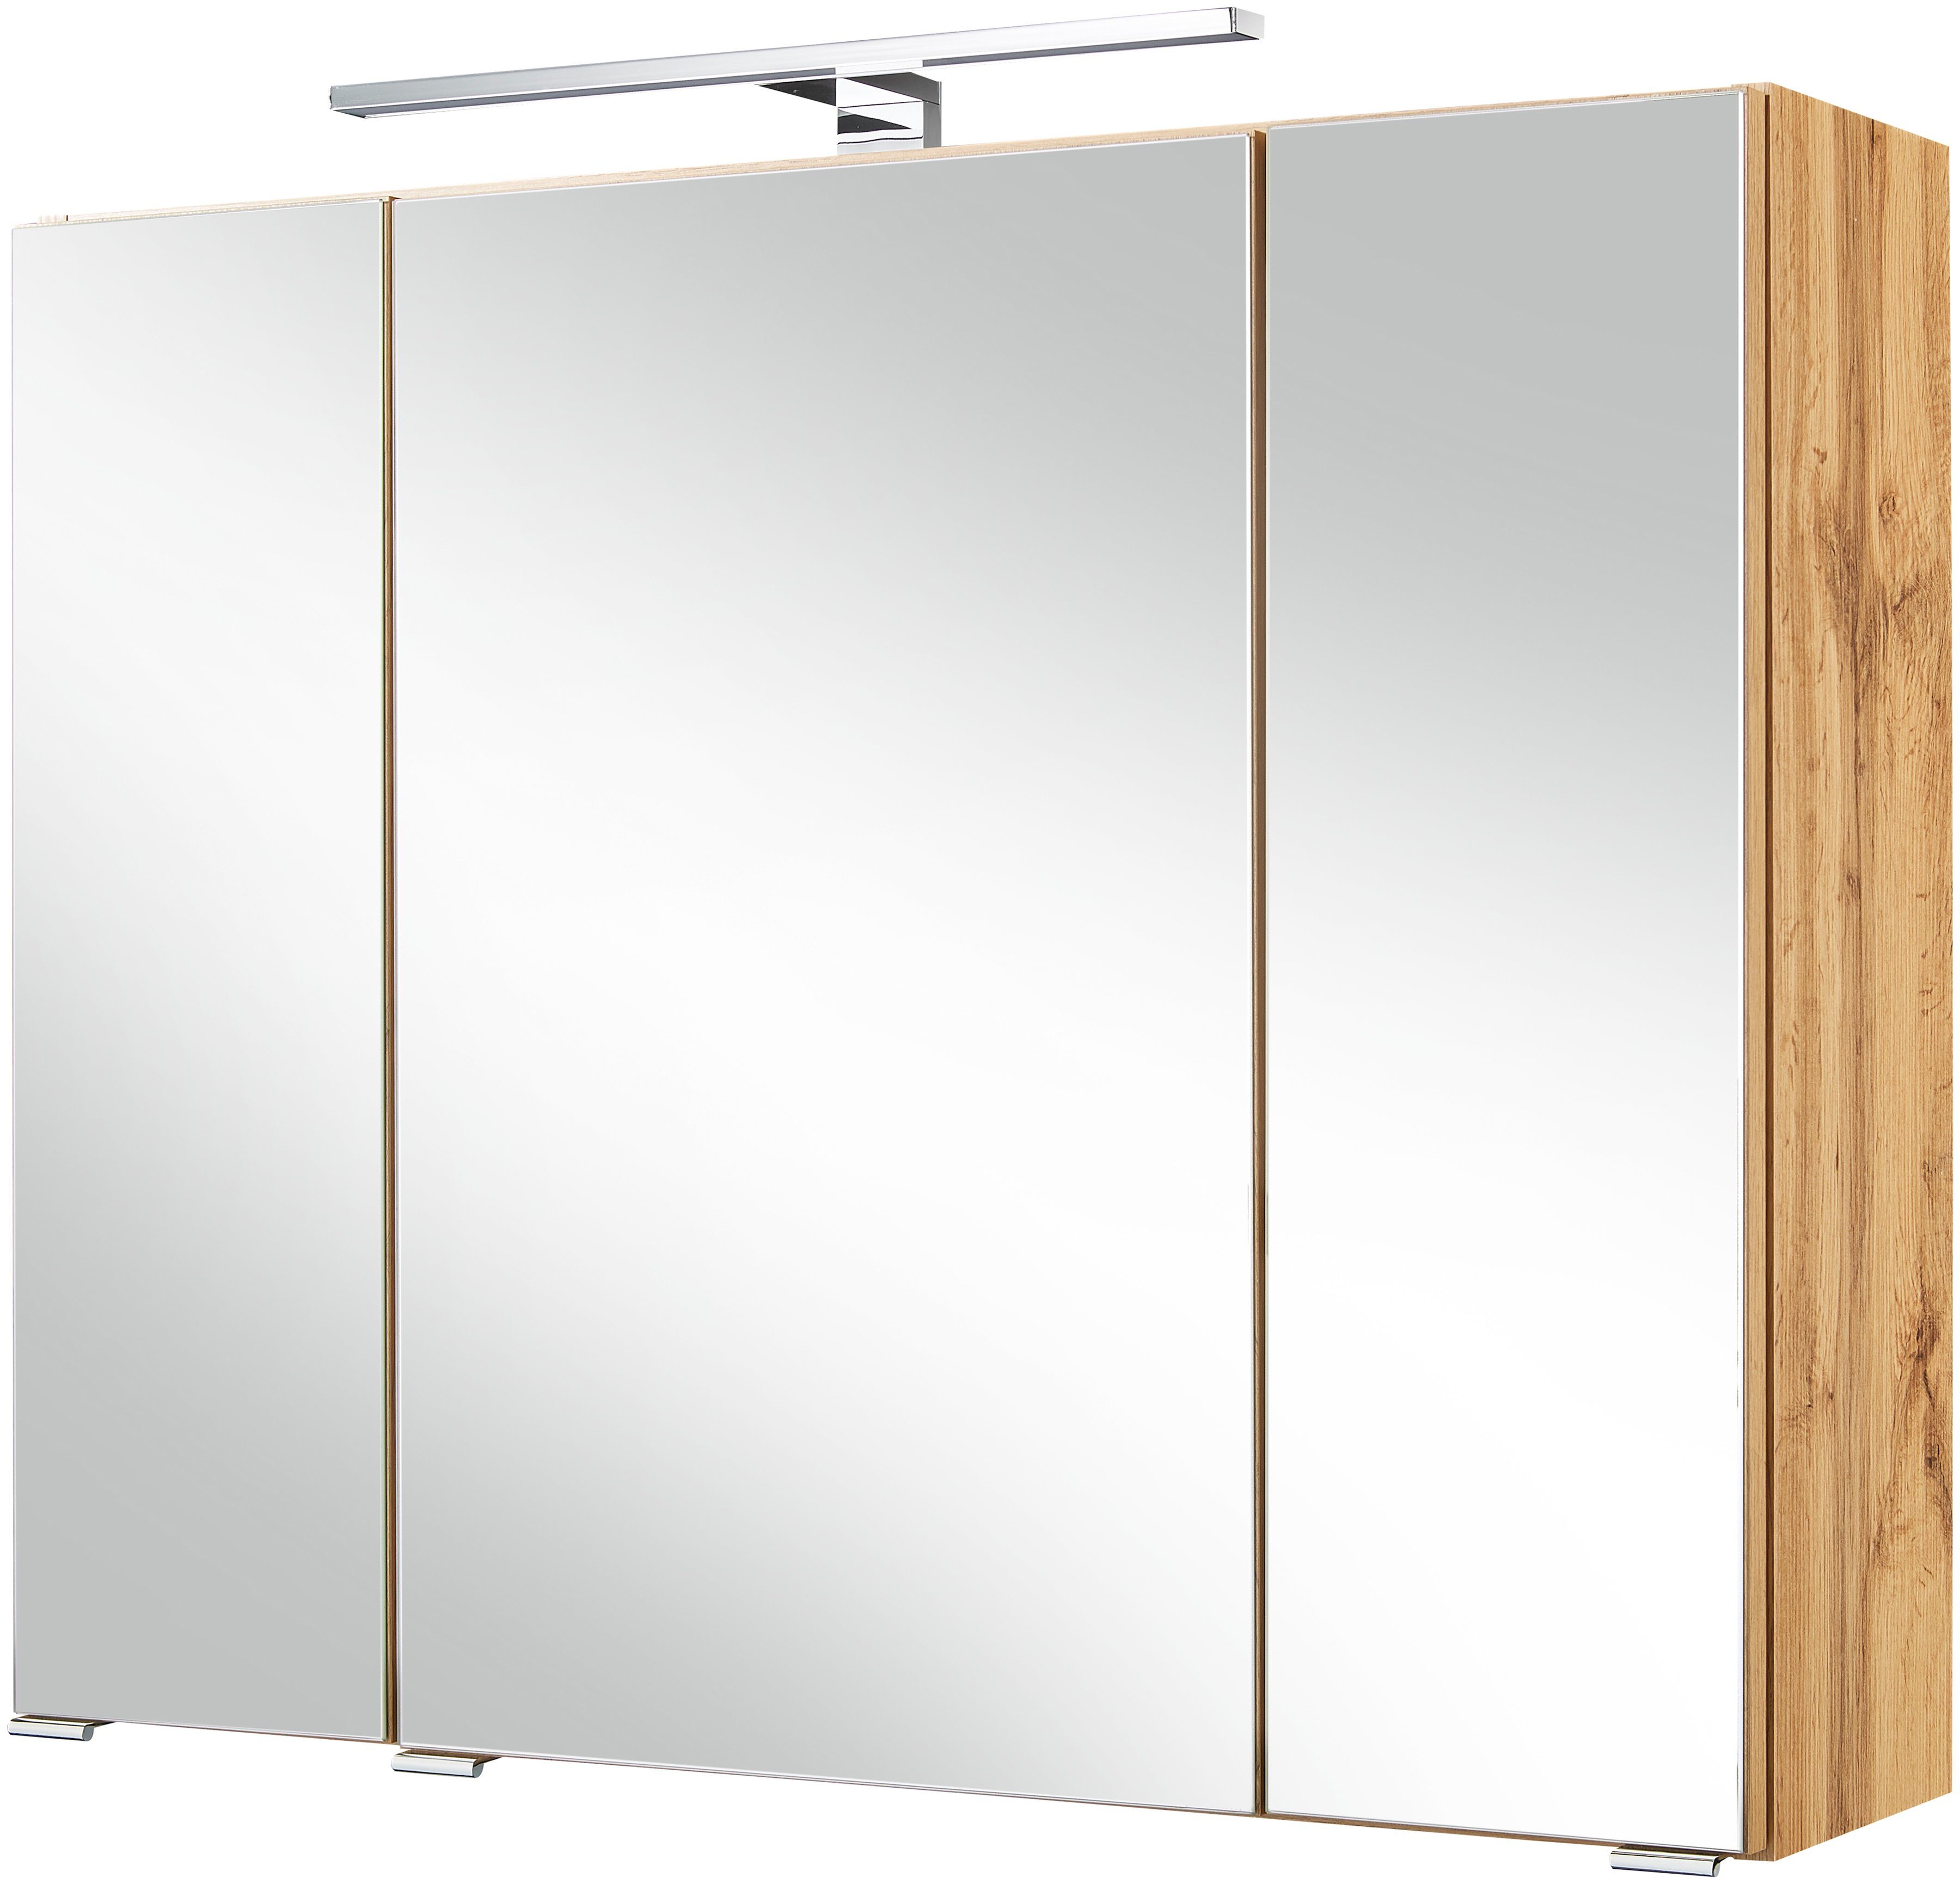 HELD MÖBEL Spiegelschrank Malibu Breite 80 cm, mit Spiegeltüren und Türendämpfern eiche | Spiegelschränke